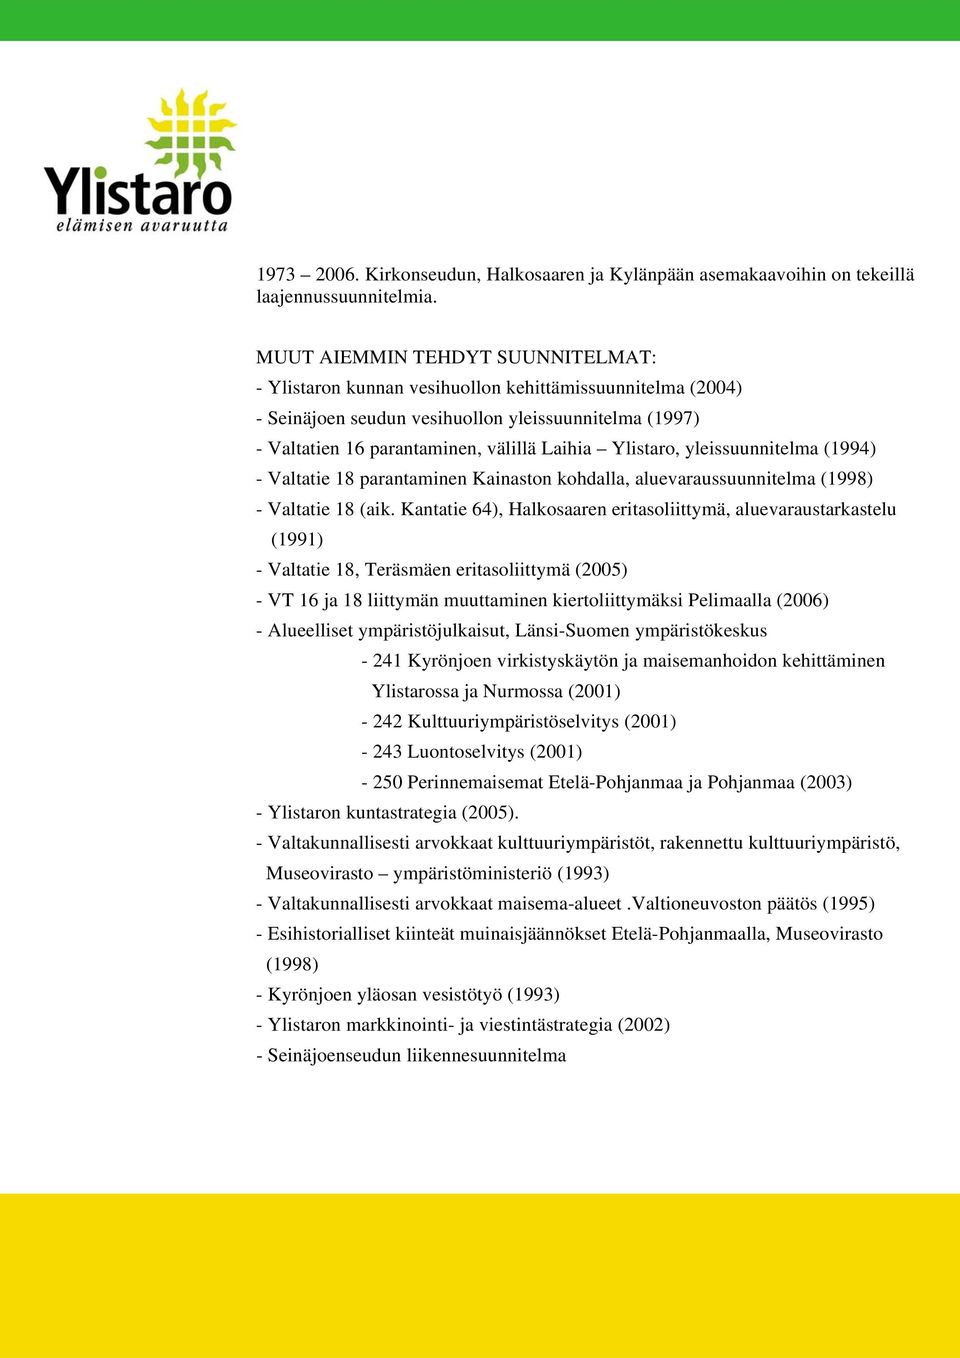 Ylistaro, yleissuunnitelma (1994) - Valtatie 18 parantaminen Kainaston kohdalla, aluevaraussuunnitelma (1998) - Valtatie 18 (aik.